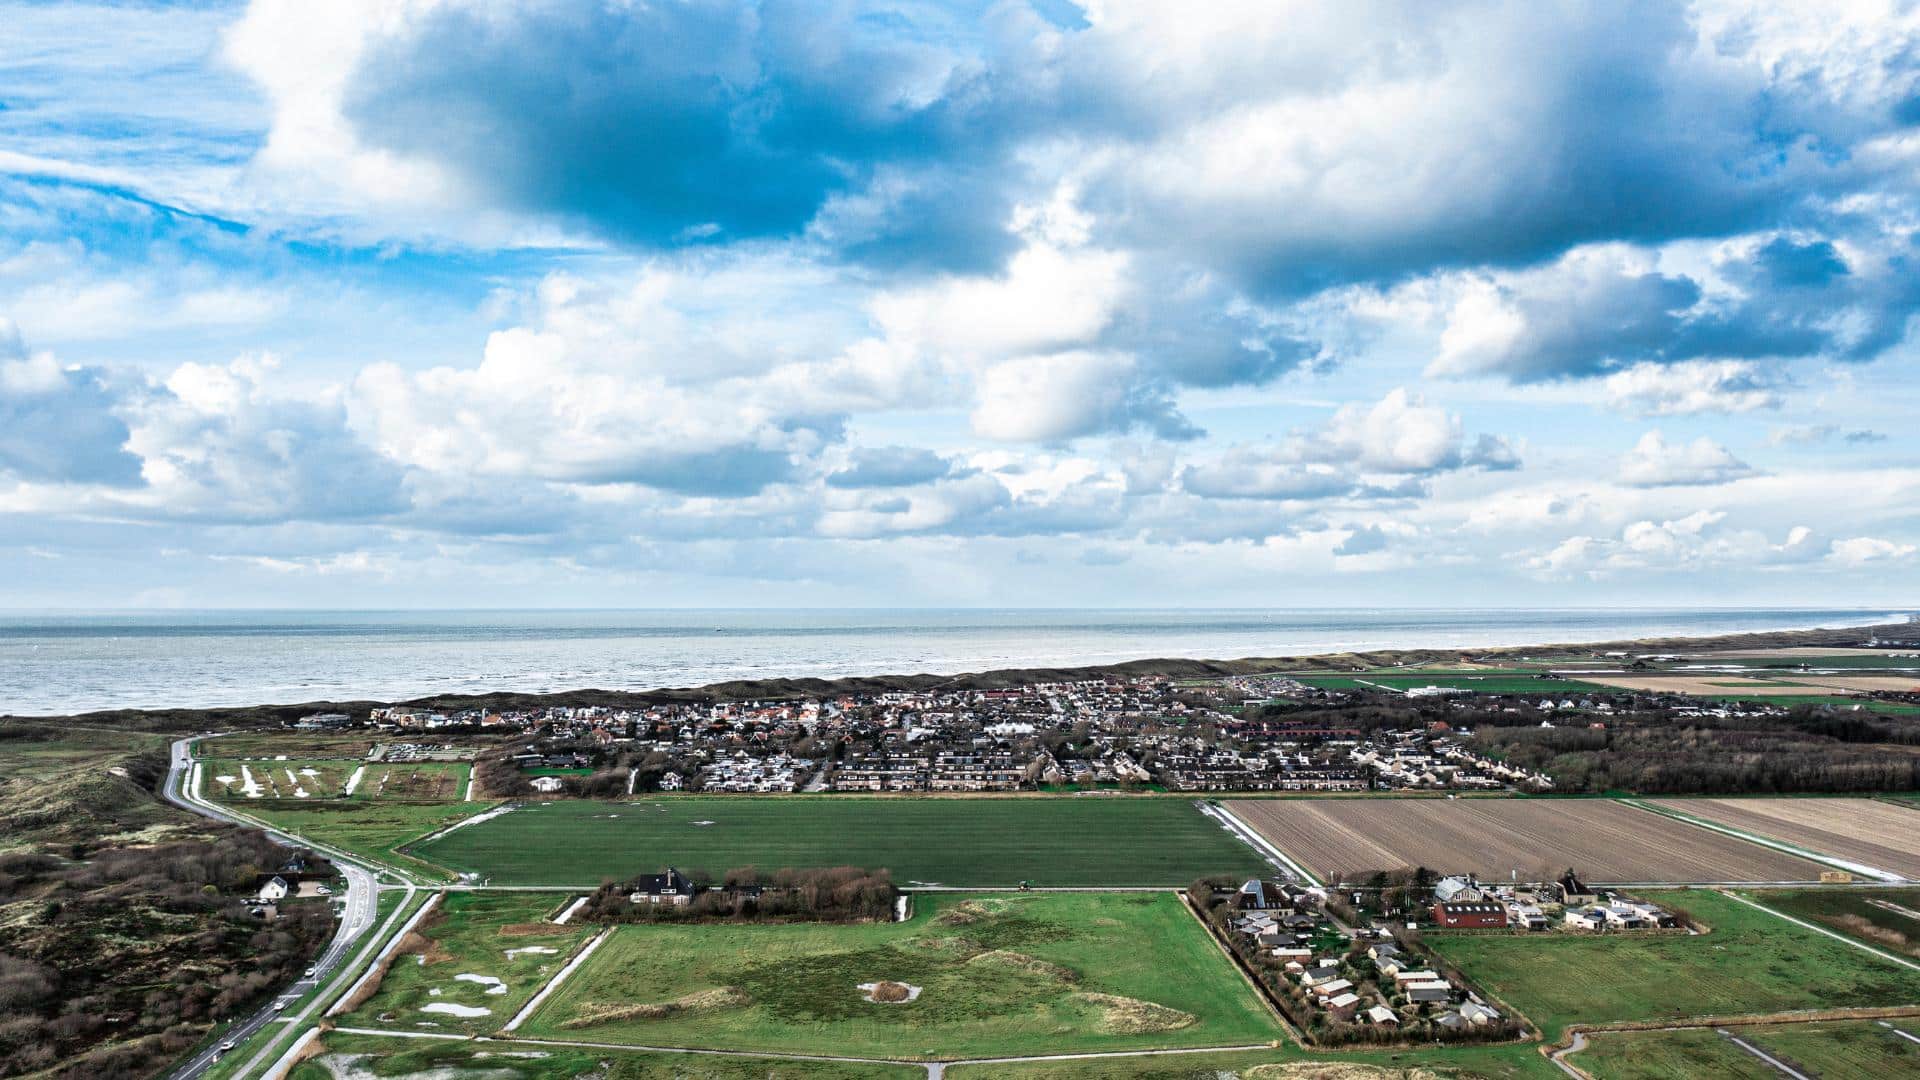 Afslag Callantsoog | Hollandse kustroute